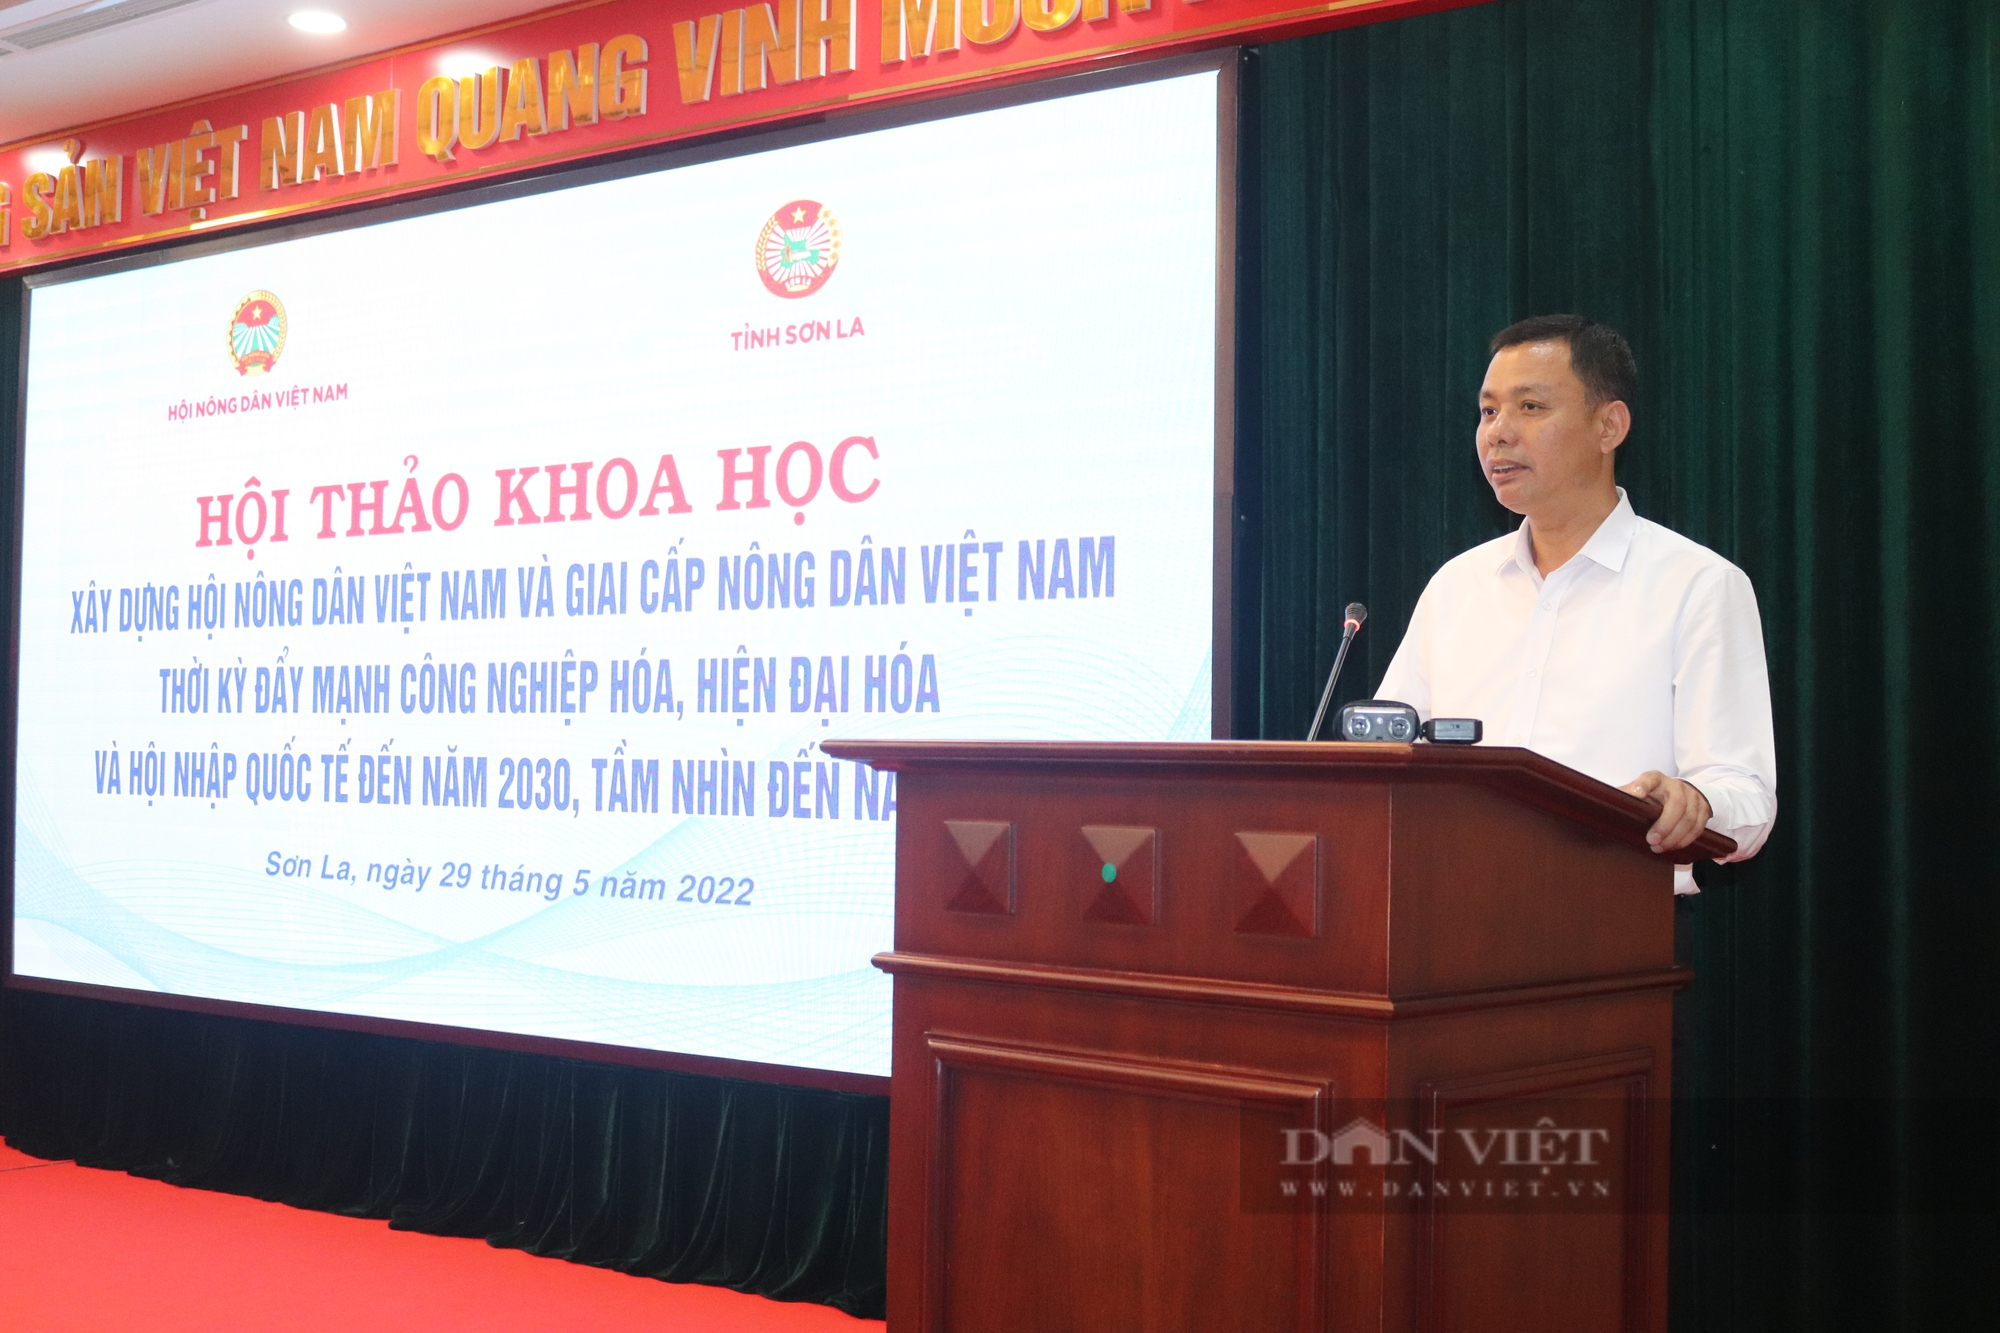 Tổ chức Hội và Hôi viên nông dân Việt Nam góp phần vào đẩy mạnh công nghiệp hóa, hiện đại hóa đất nước - Ảnh 4.